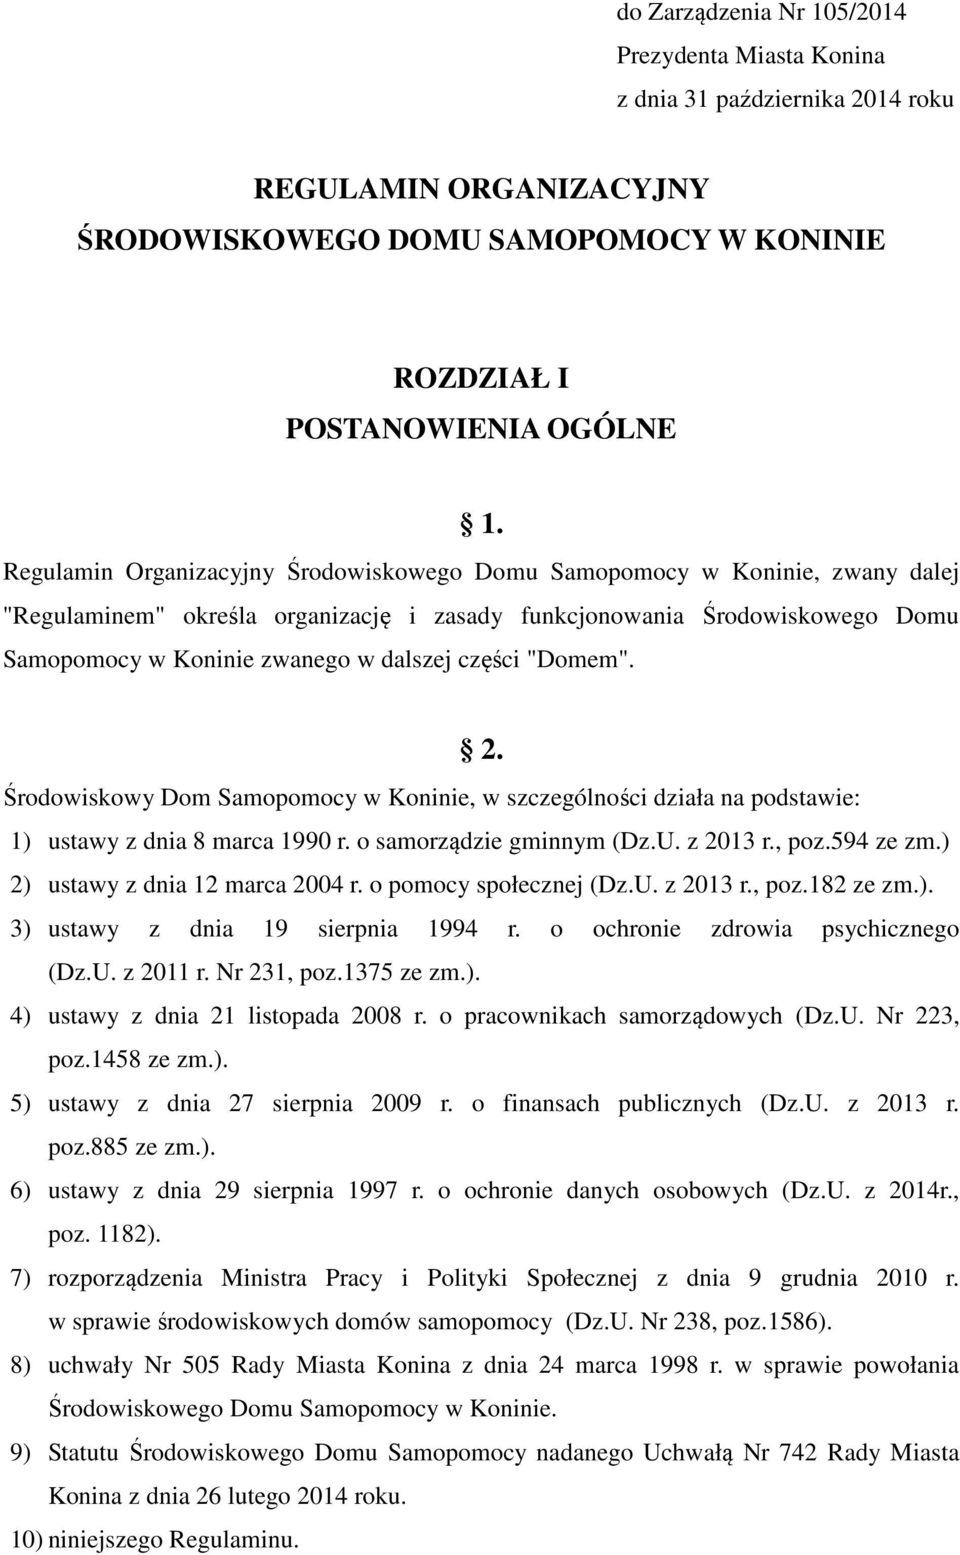 części "Domem". 2. Środowiskowy Dom Samopomocy w Koninie, w szczególności działa na podstawie: 1) ustawy z dnia 8 marca 1990 r. o samorządzie gminnym (Dz.U. z 2013 r., poz.594 ze zm.